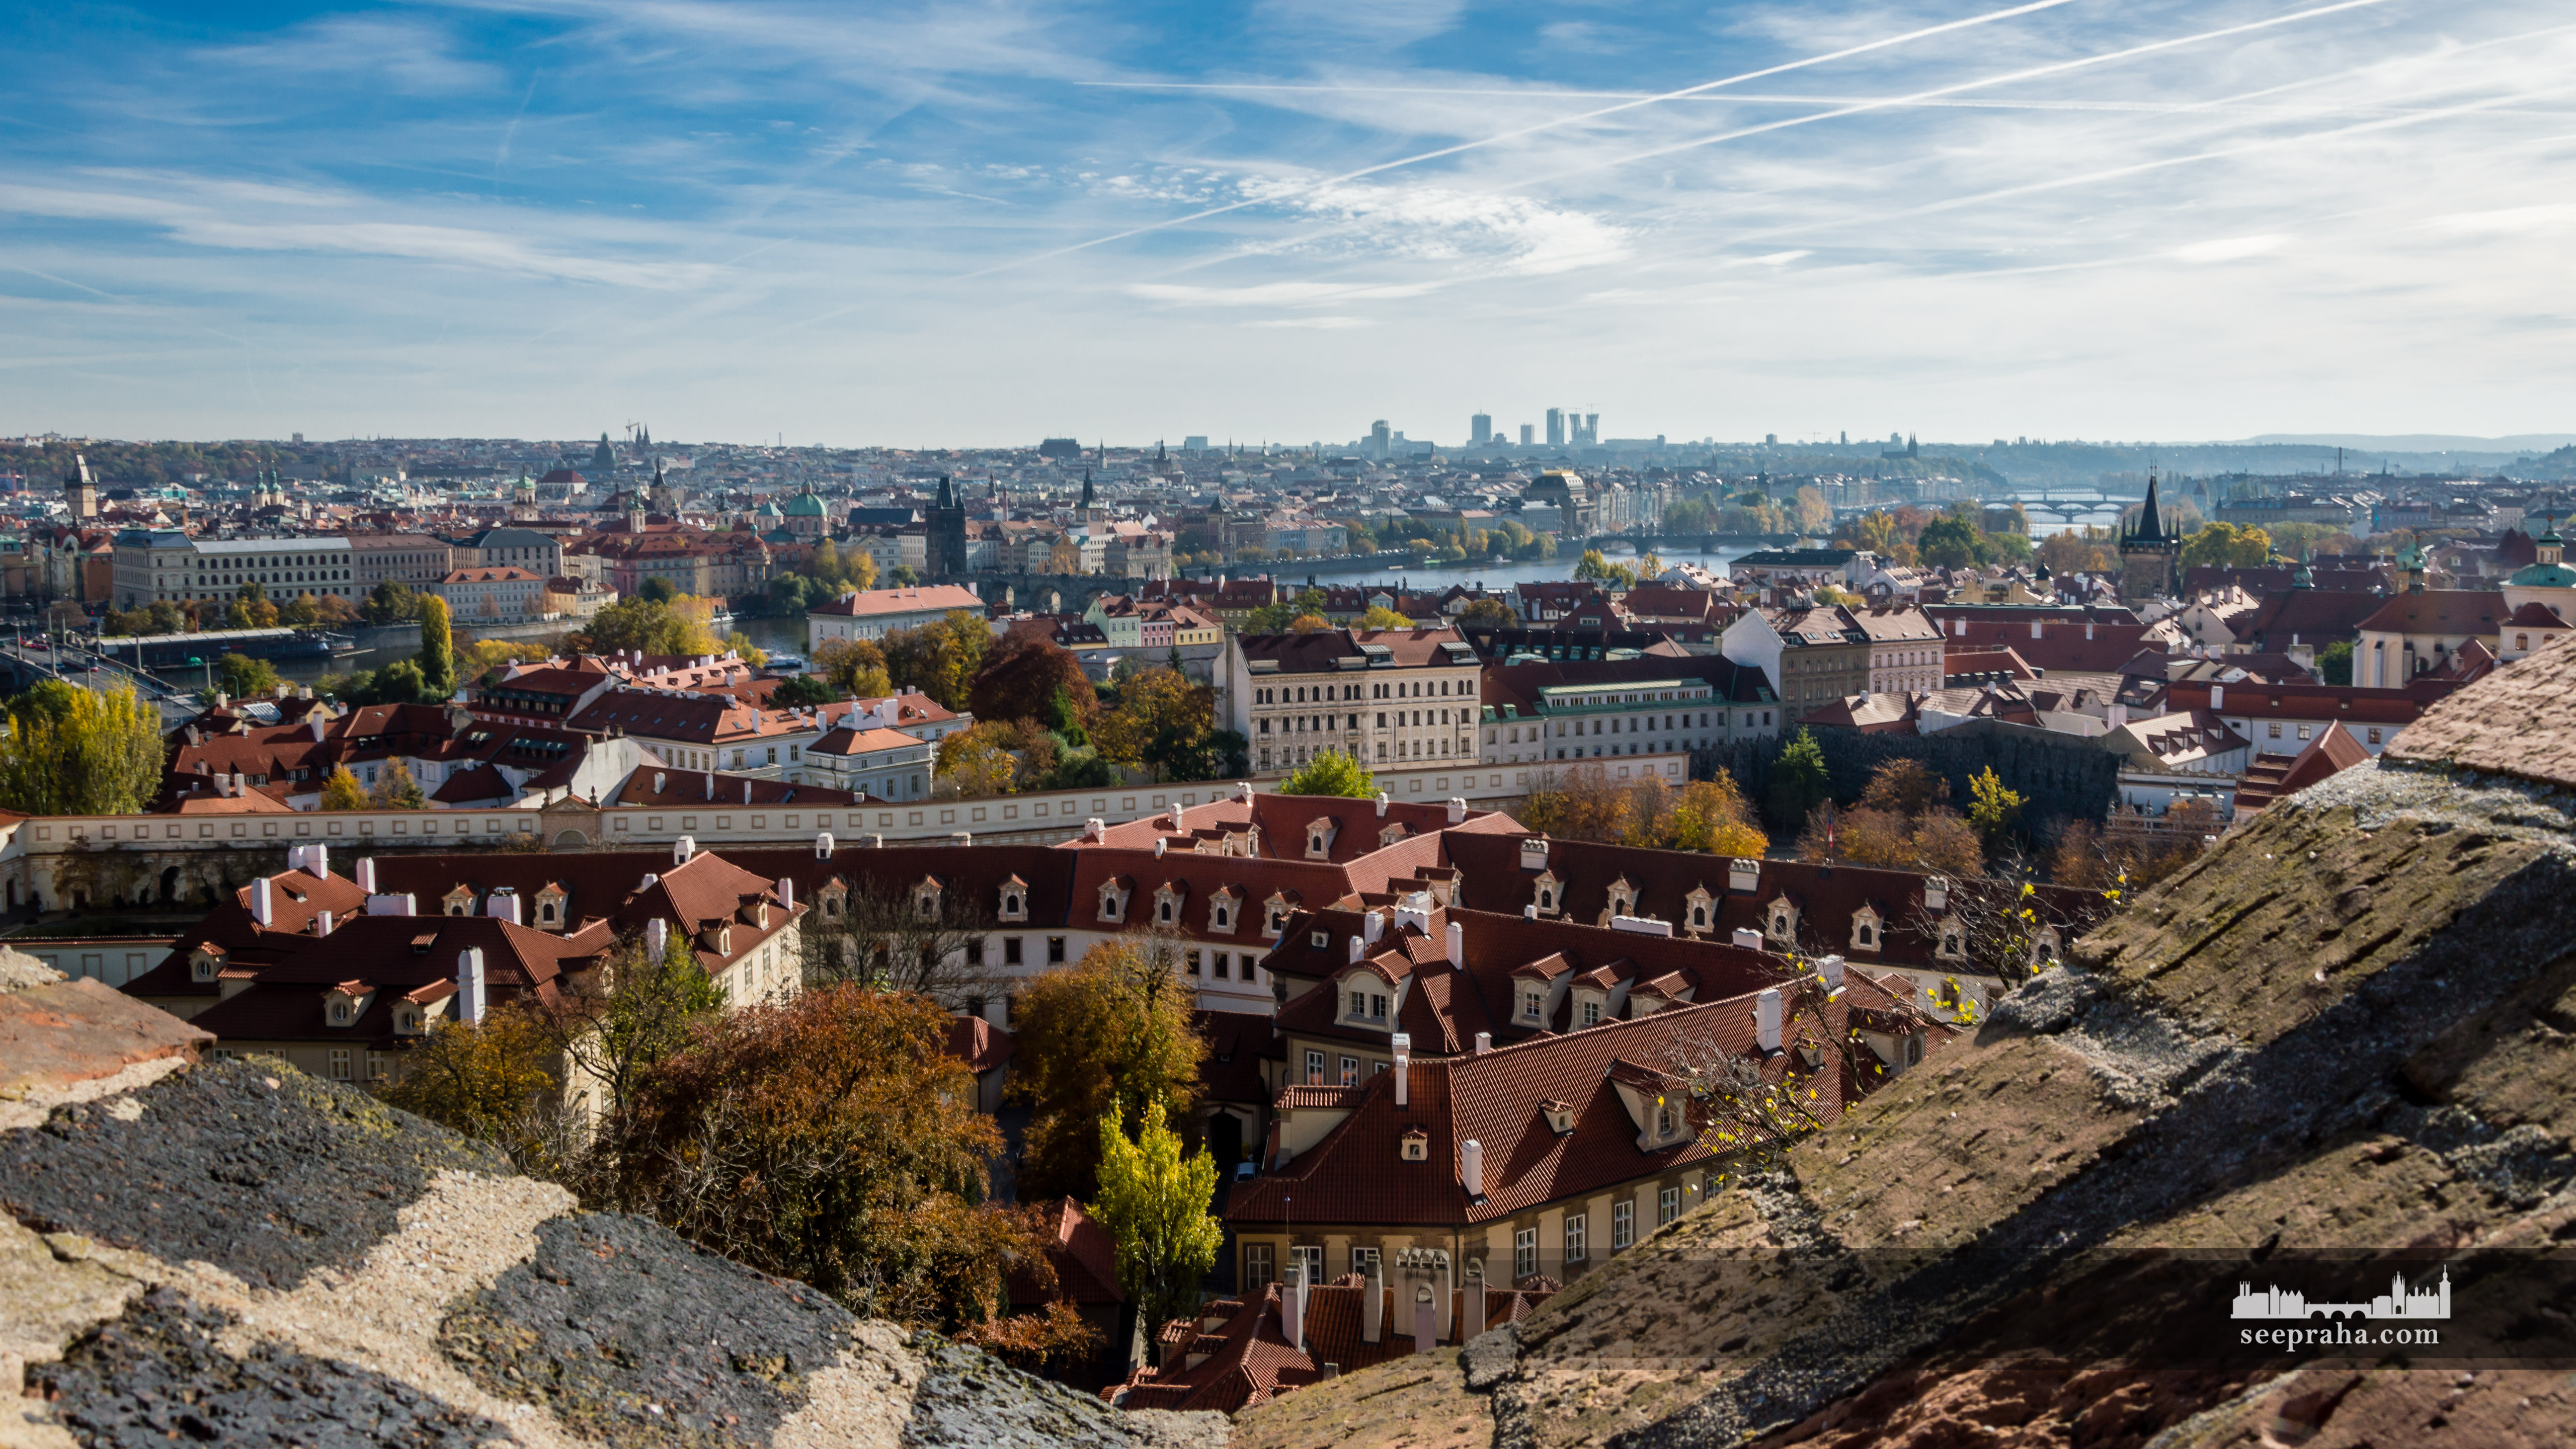 Výhled na město z pevnosti Vyšehrad, Praha, Česko